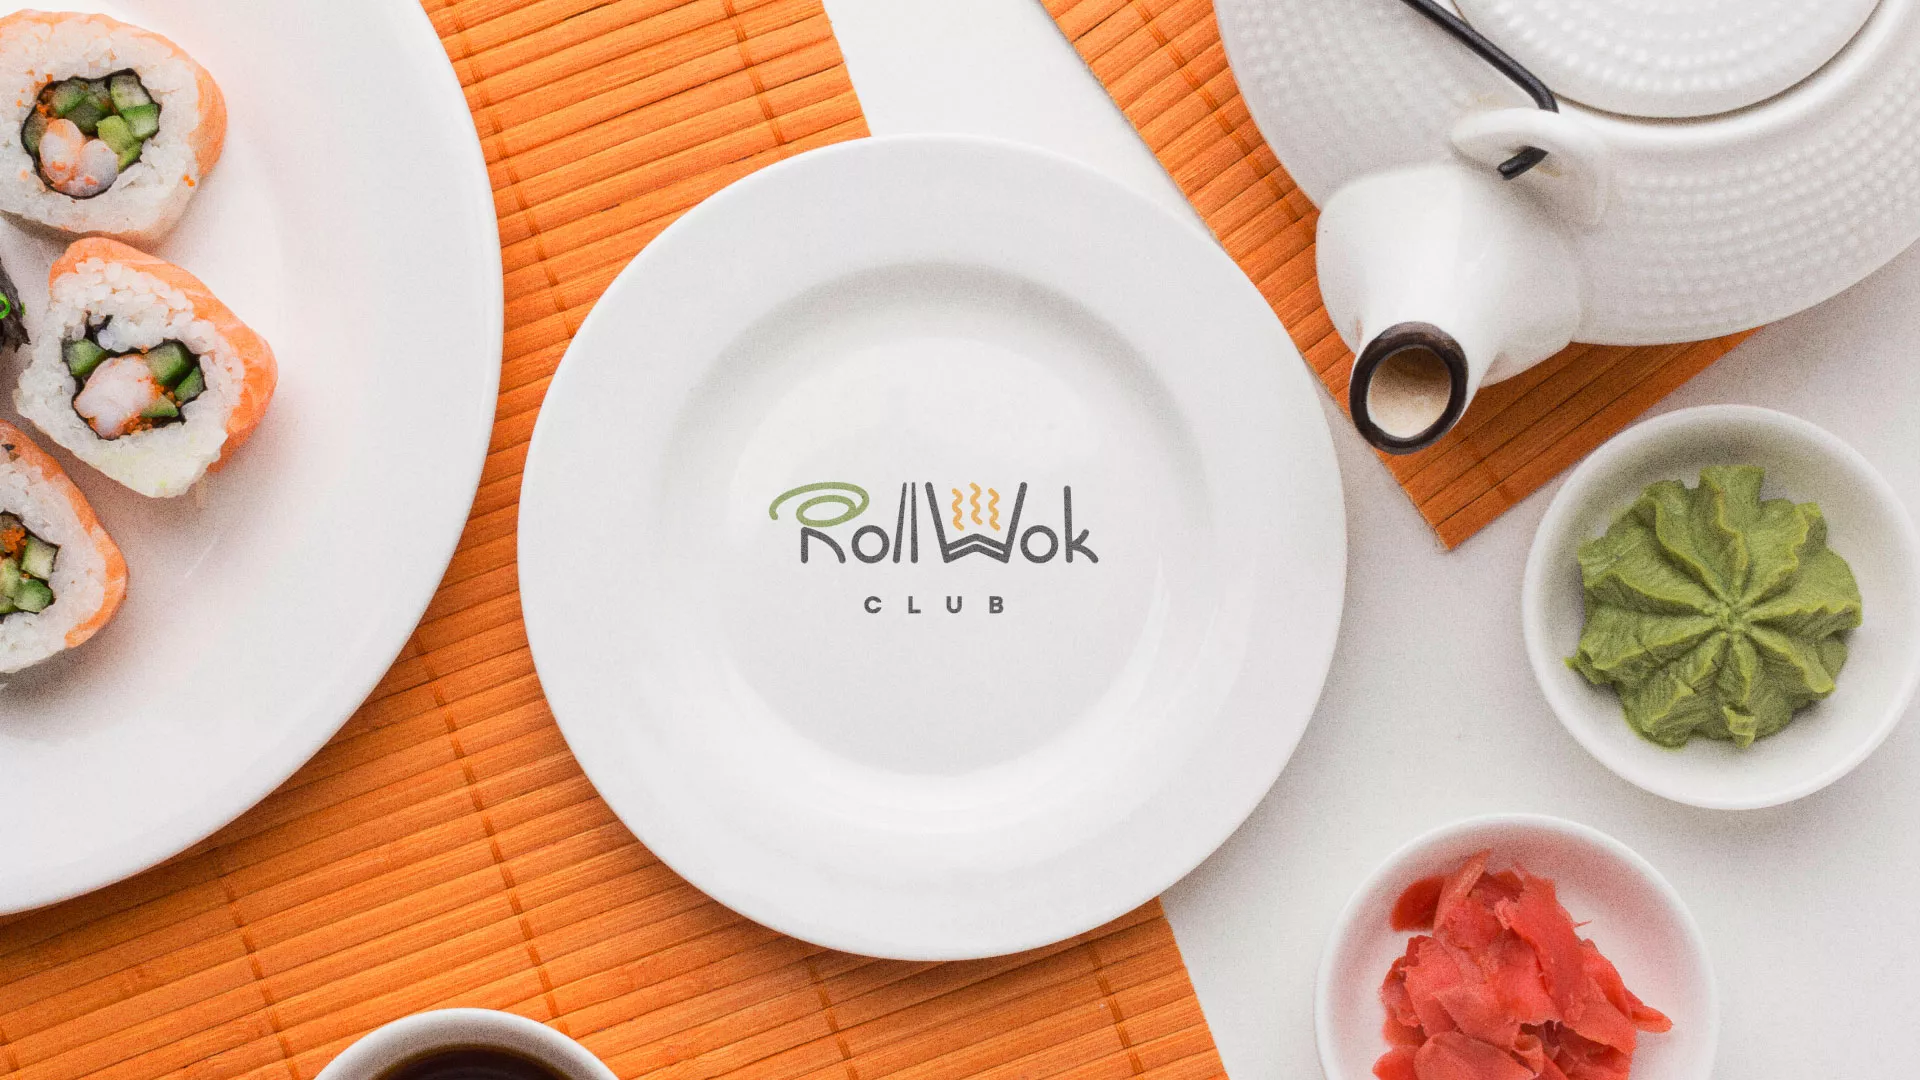 Разработка логотипа и фирменного стиля суши-бара «Roll Wok Club» в Калачинске